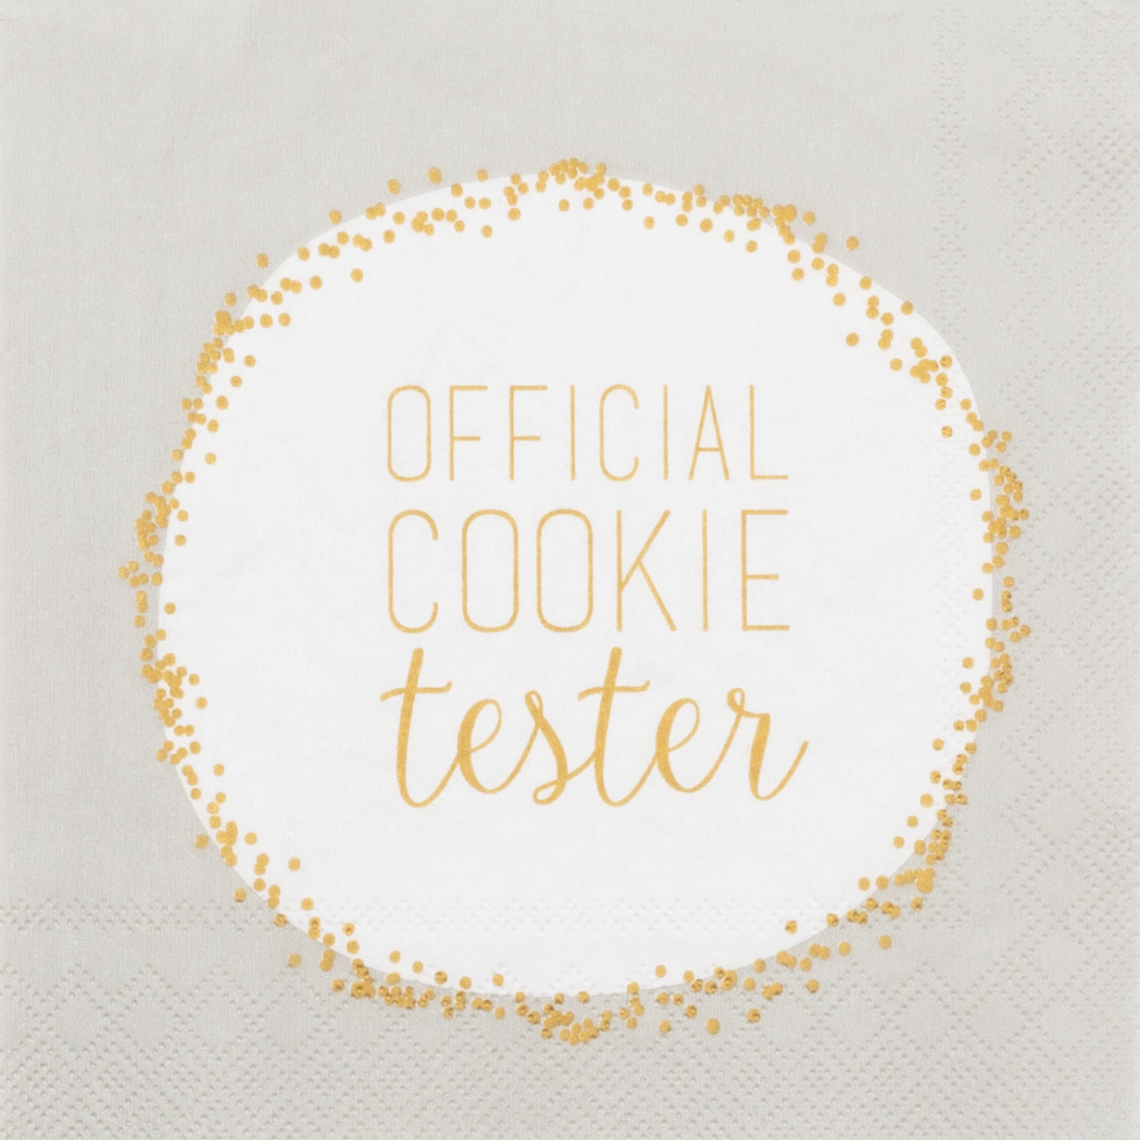 Servietten "Official cookie tester" 